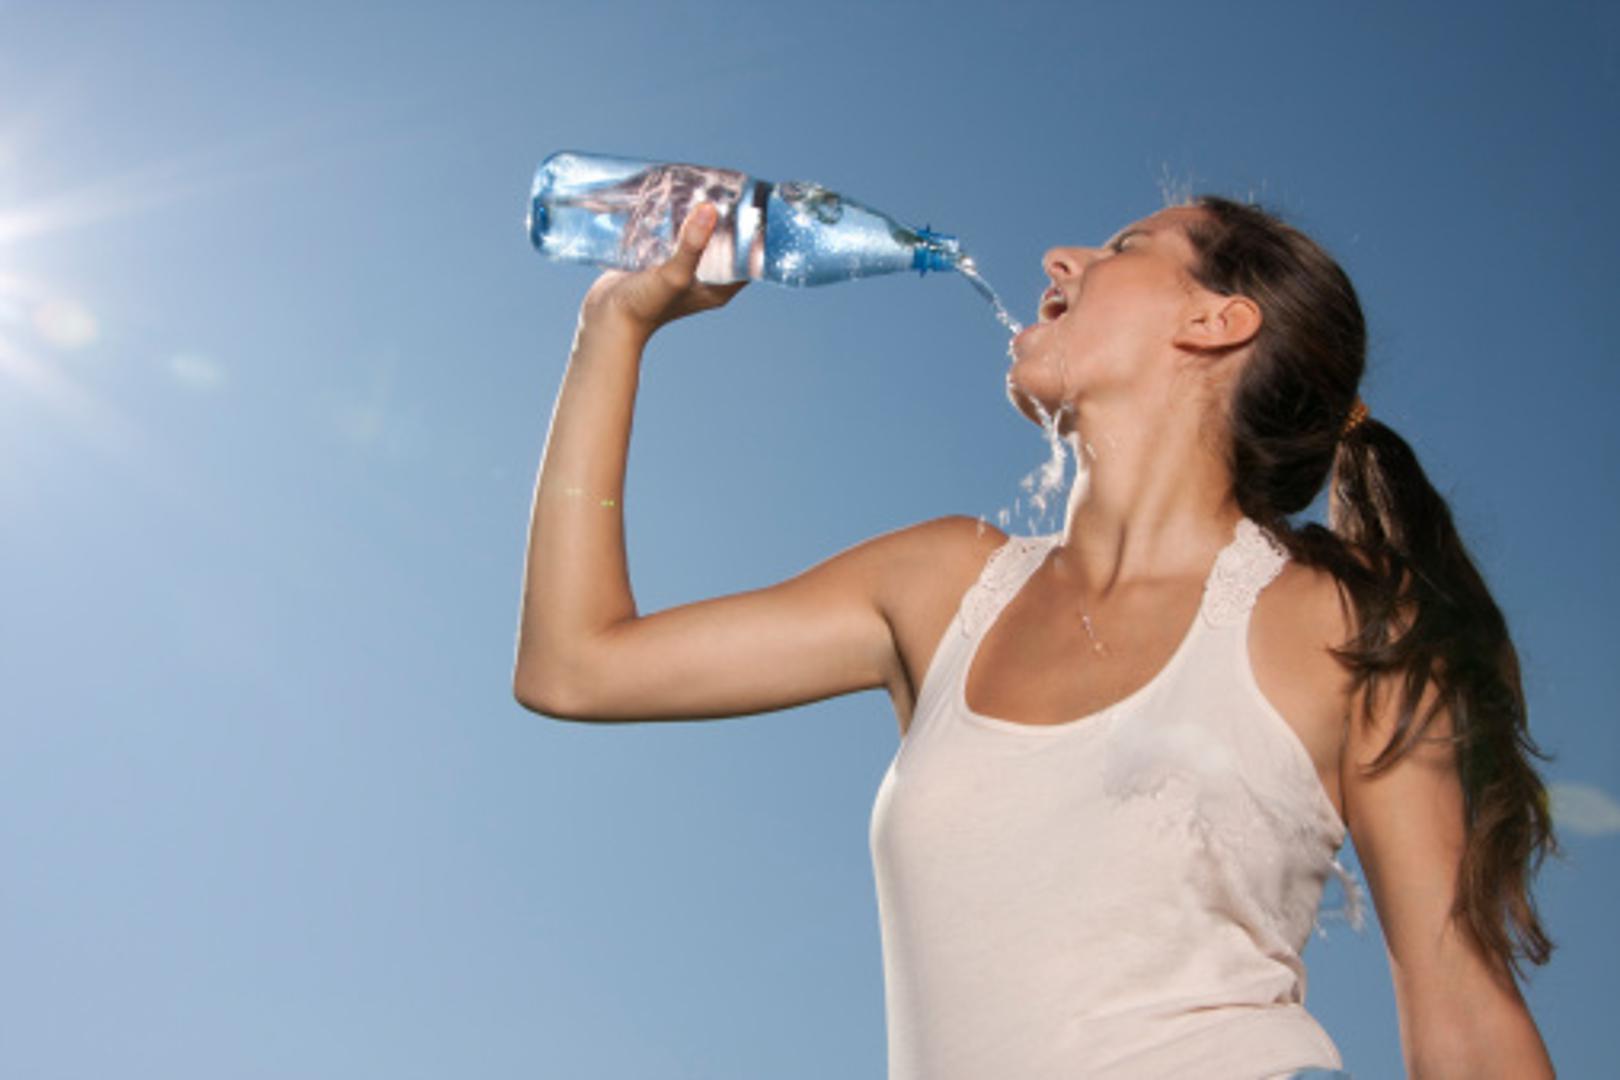 Dovoljno je piti 4 do 6 čaša vode, navode znanstvenici. Potrebno je tijelu osigurati dovoljno tekućine općenito, ne mora to nužno biti samo voda.